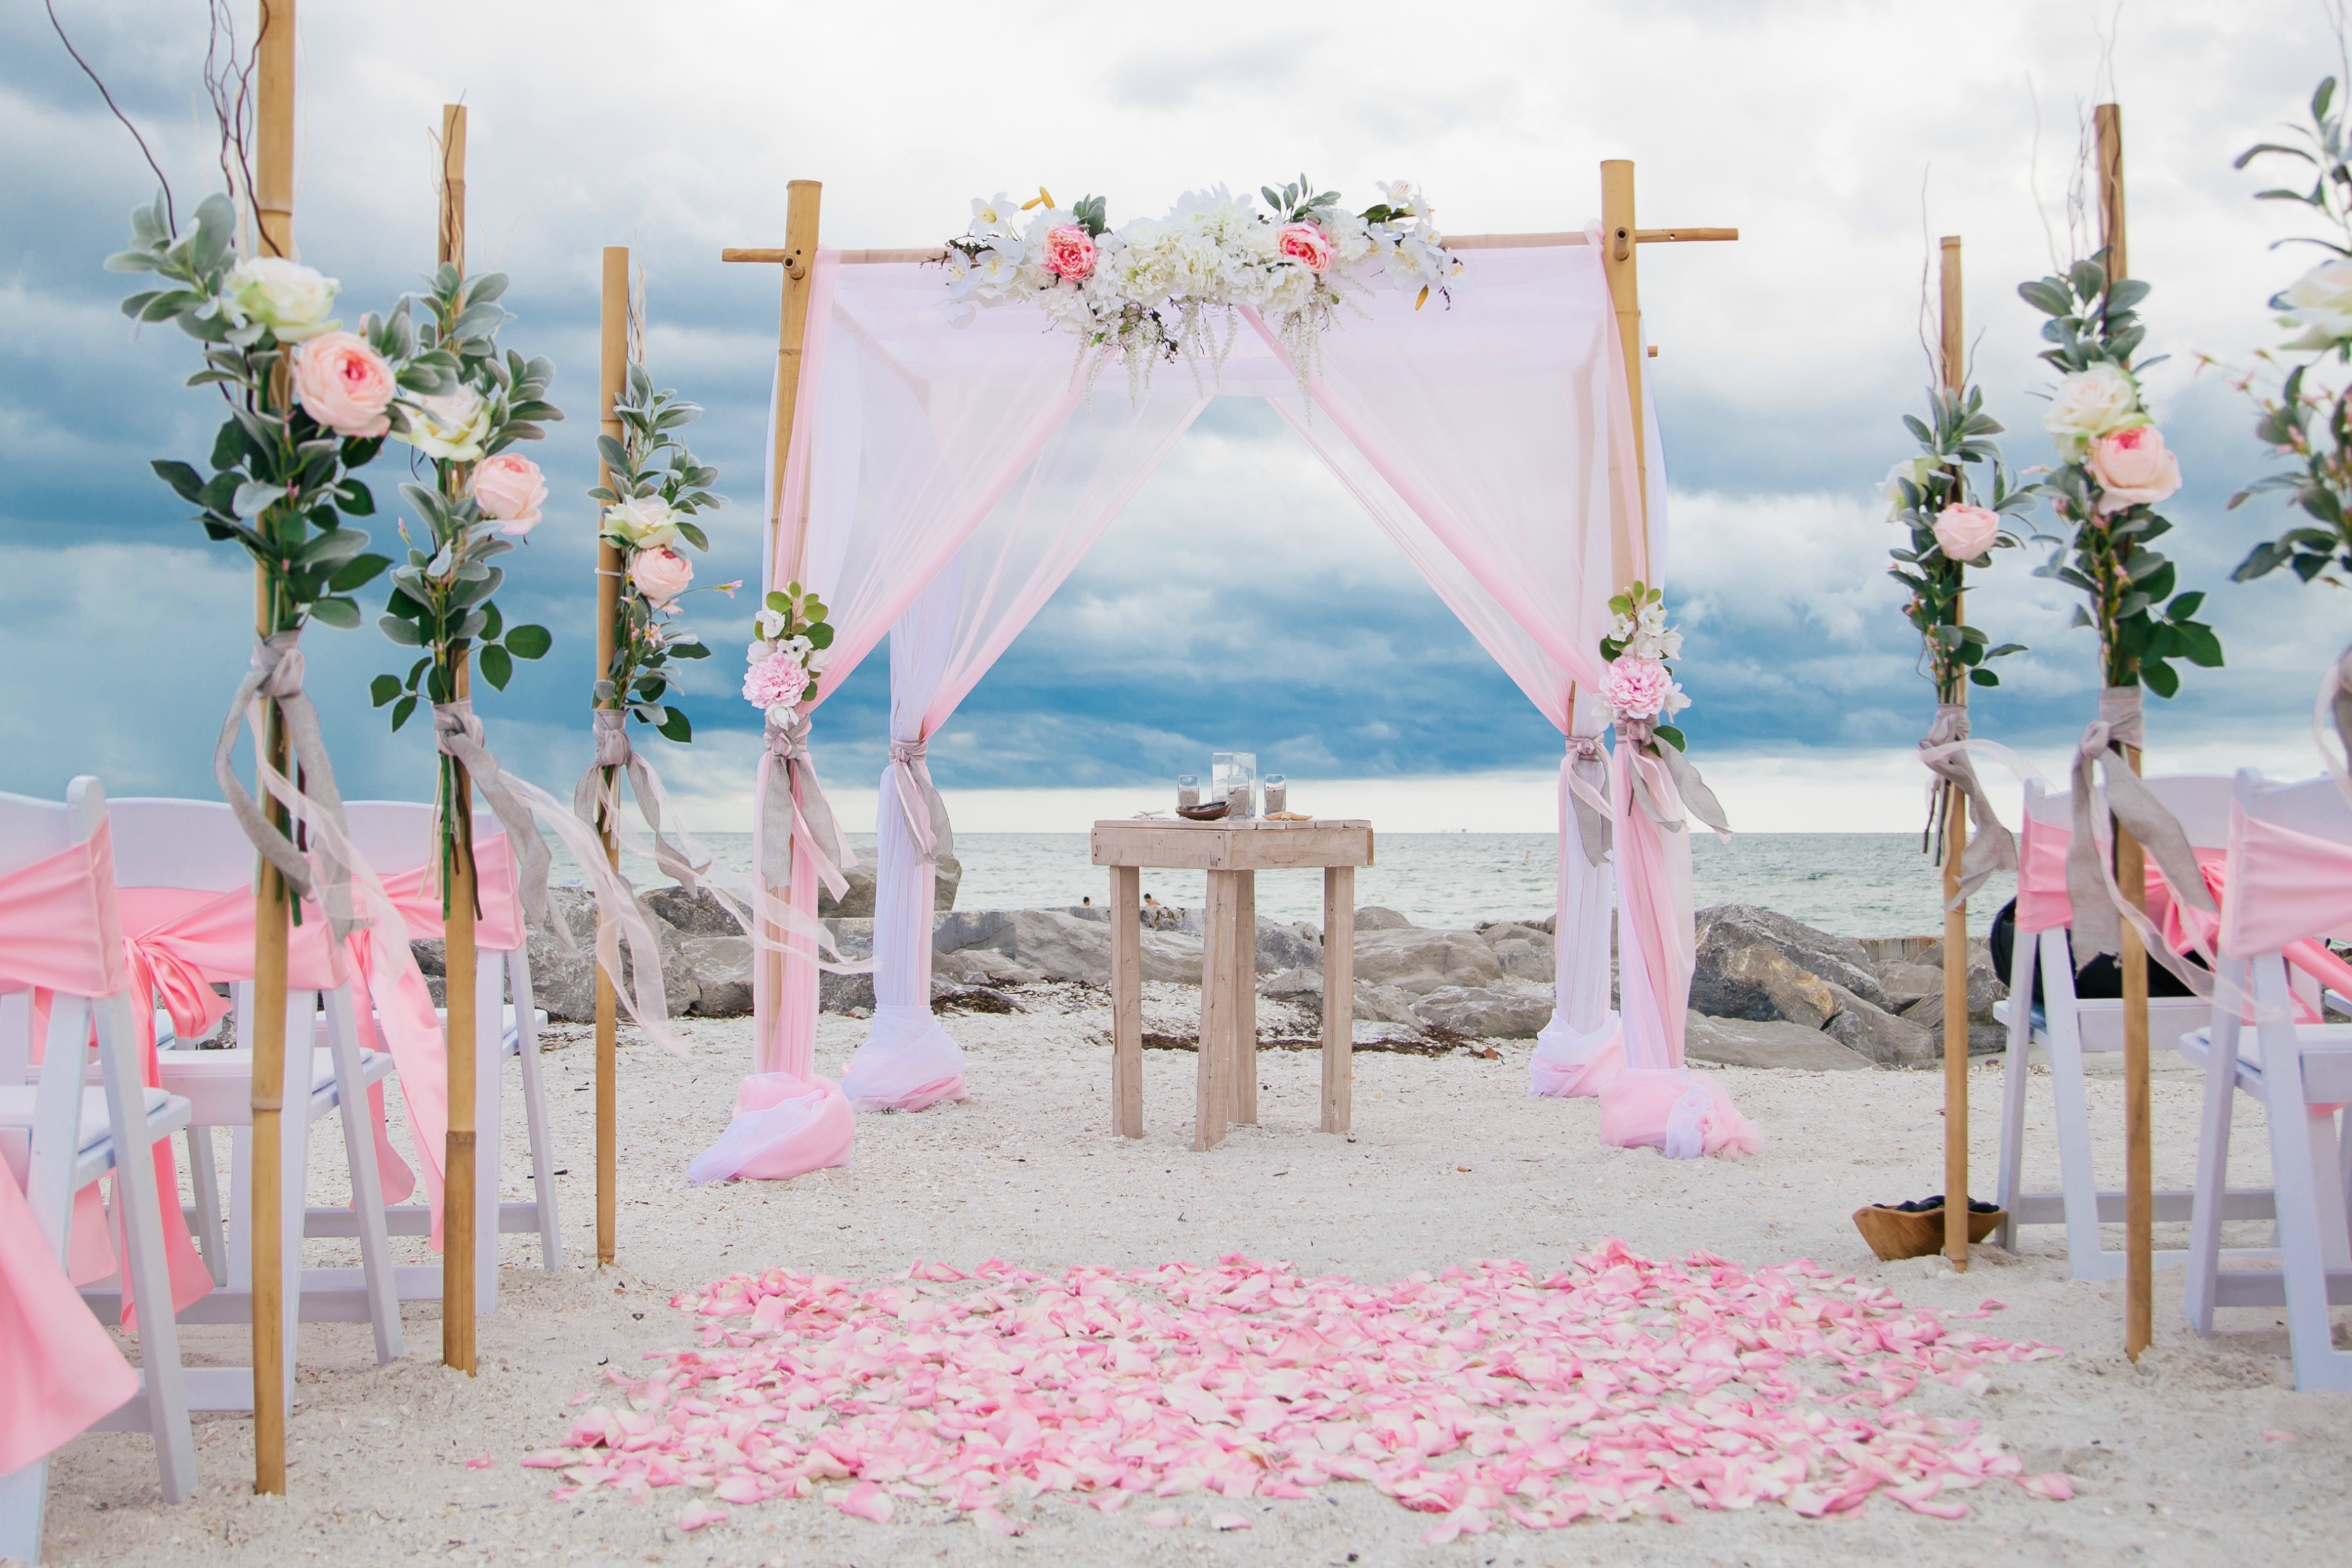 Matrimonio in spiaggia: le idee più belle per un evento romantico e originale